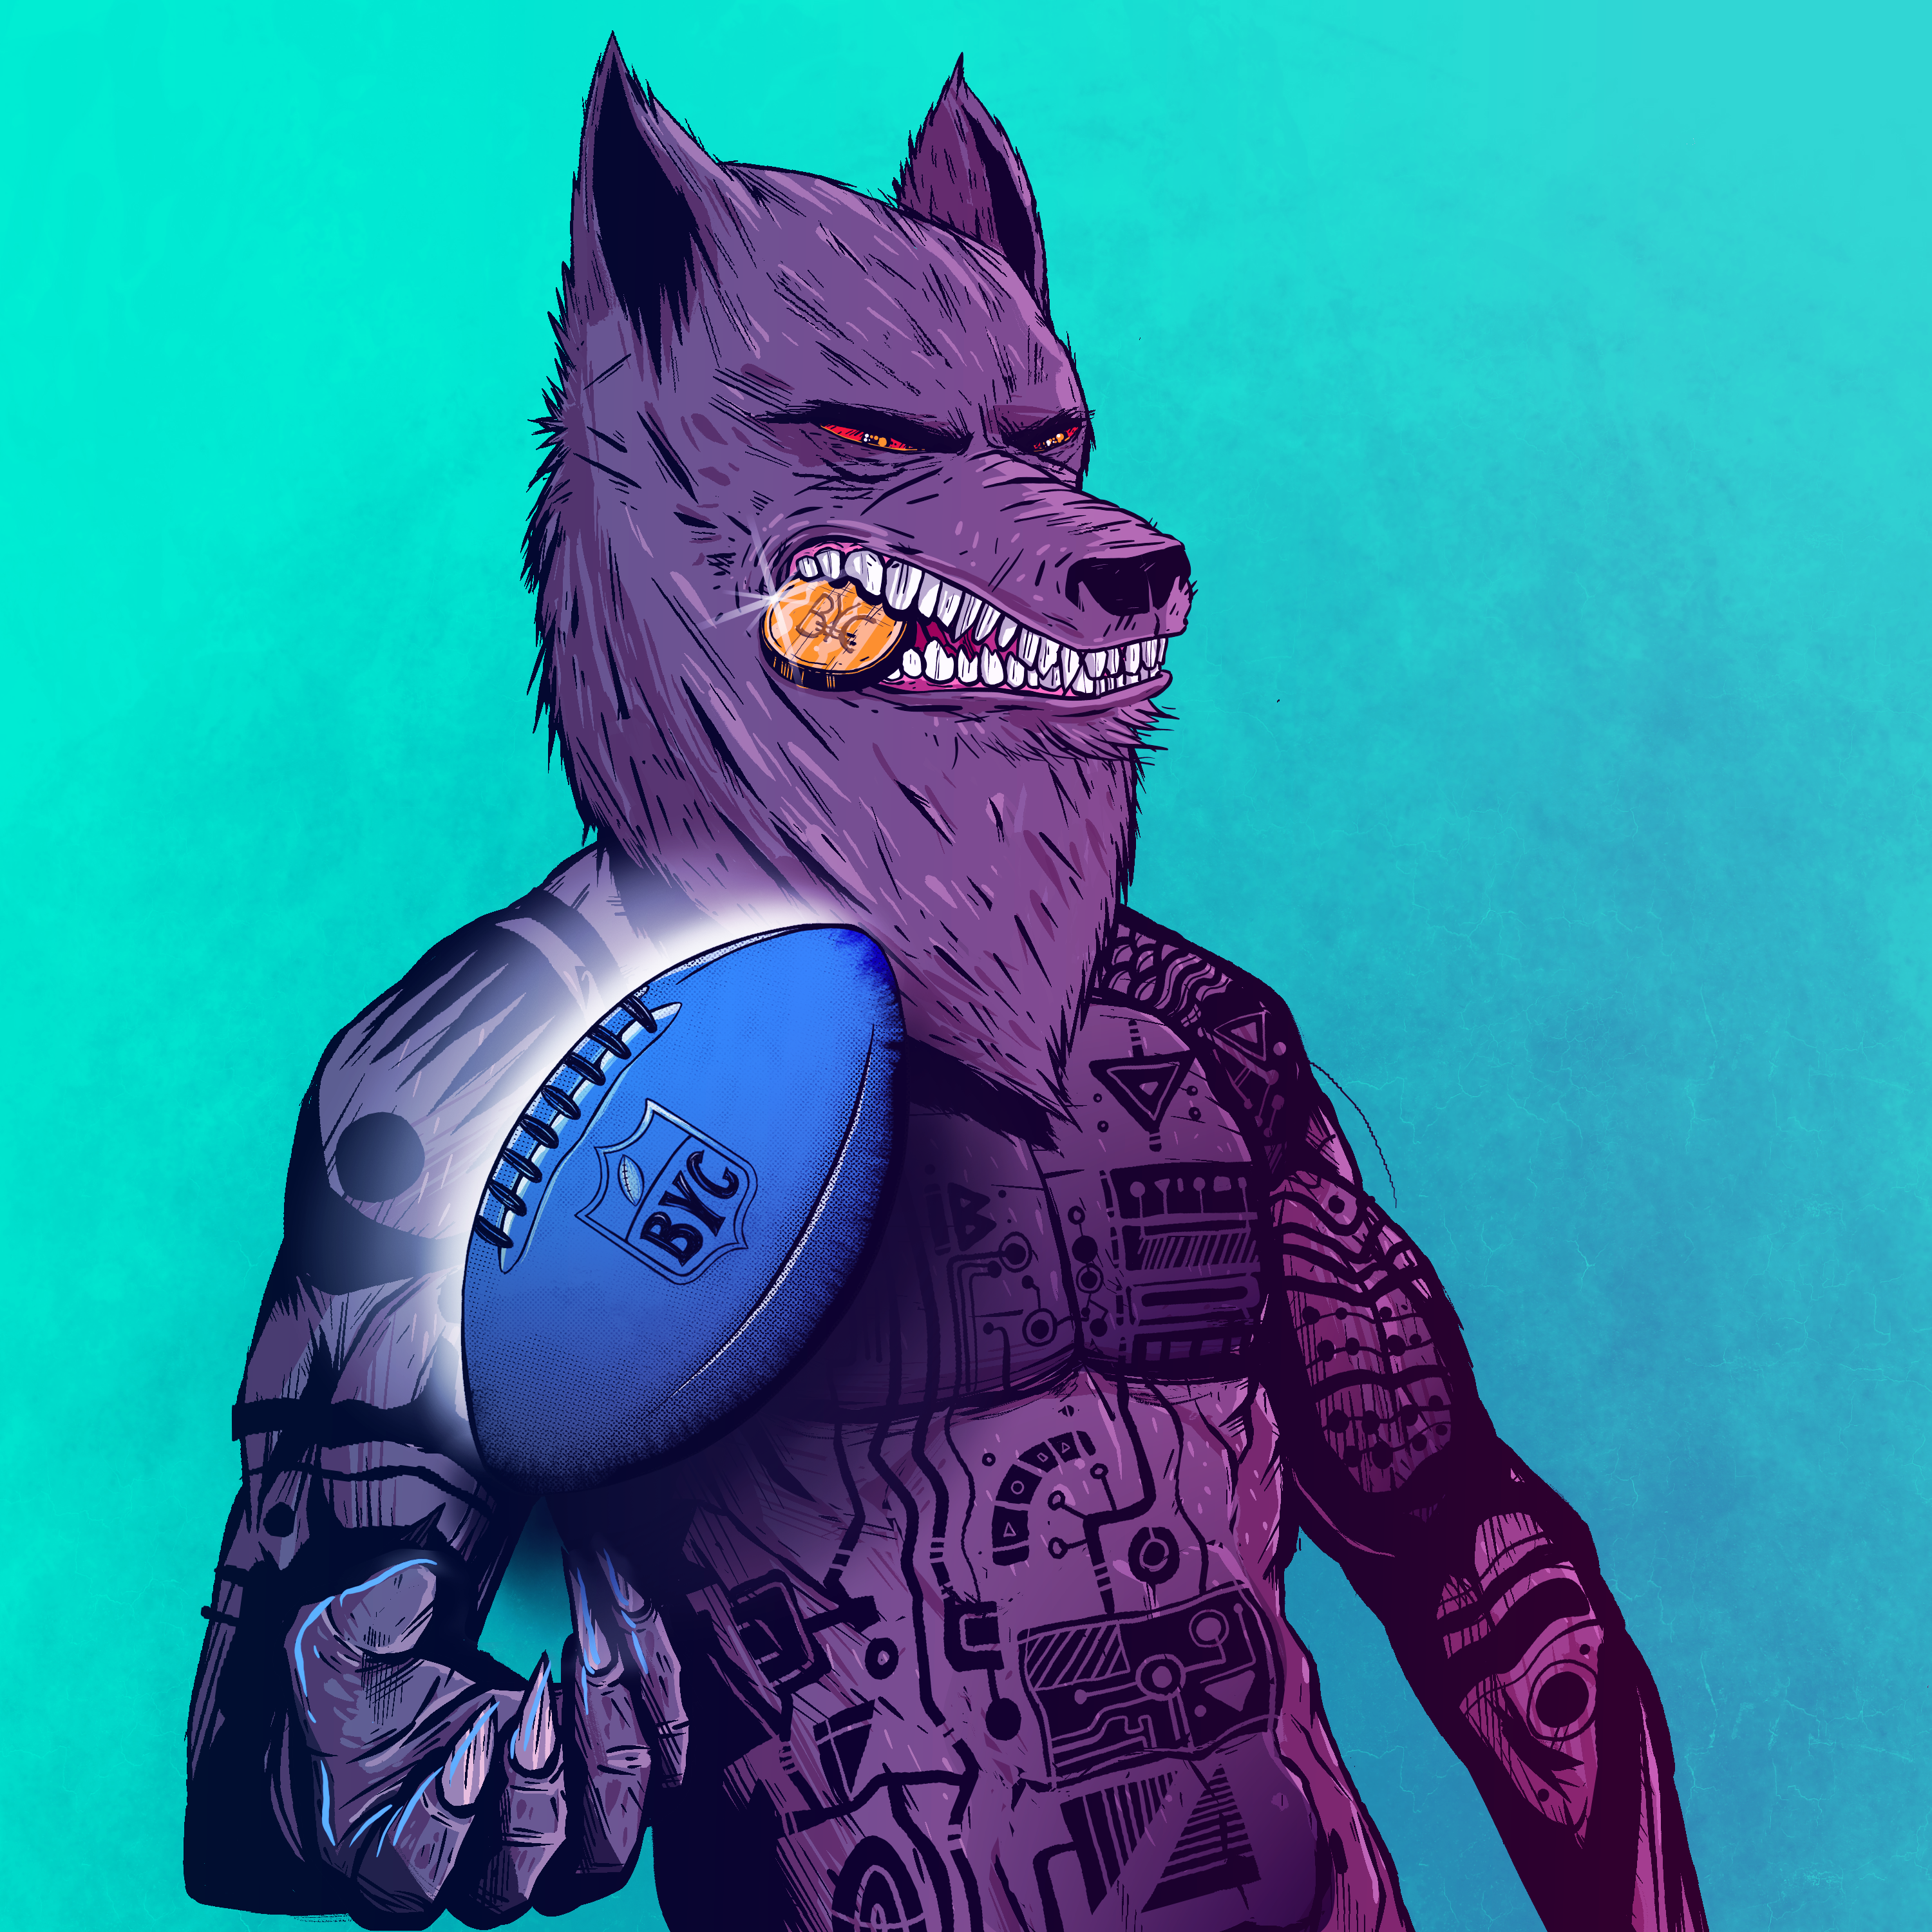 Werewolf #3244 asset